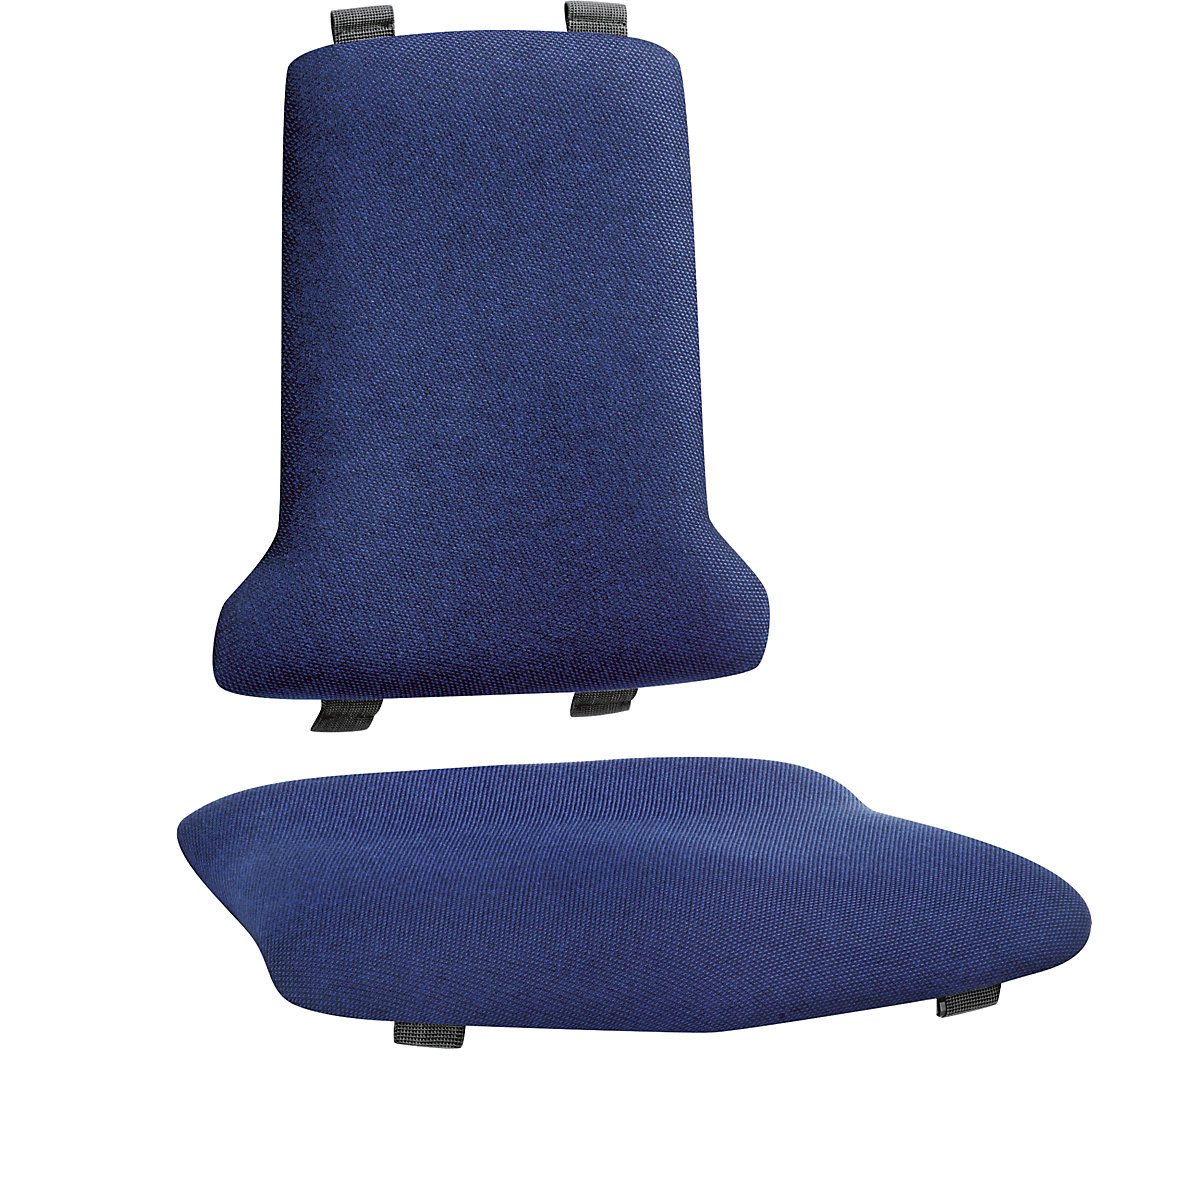 Kárpit munkahelyi székekhez – bimos, elektromosan vezetőképes kivitel, kék-4